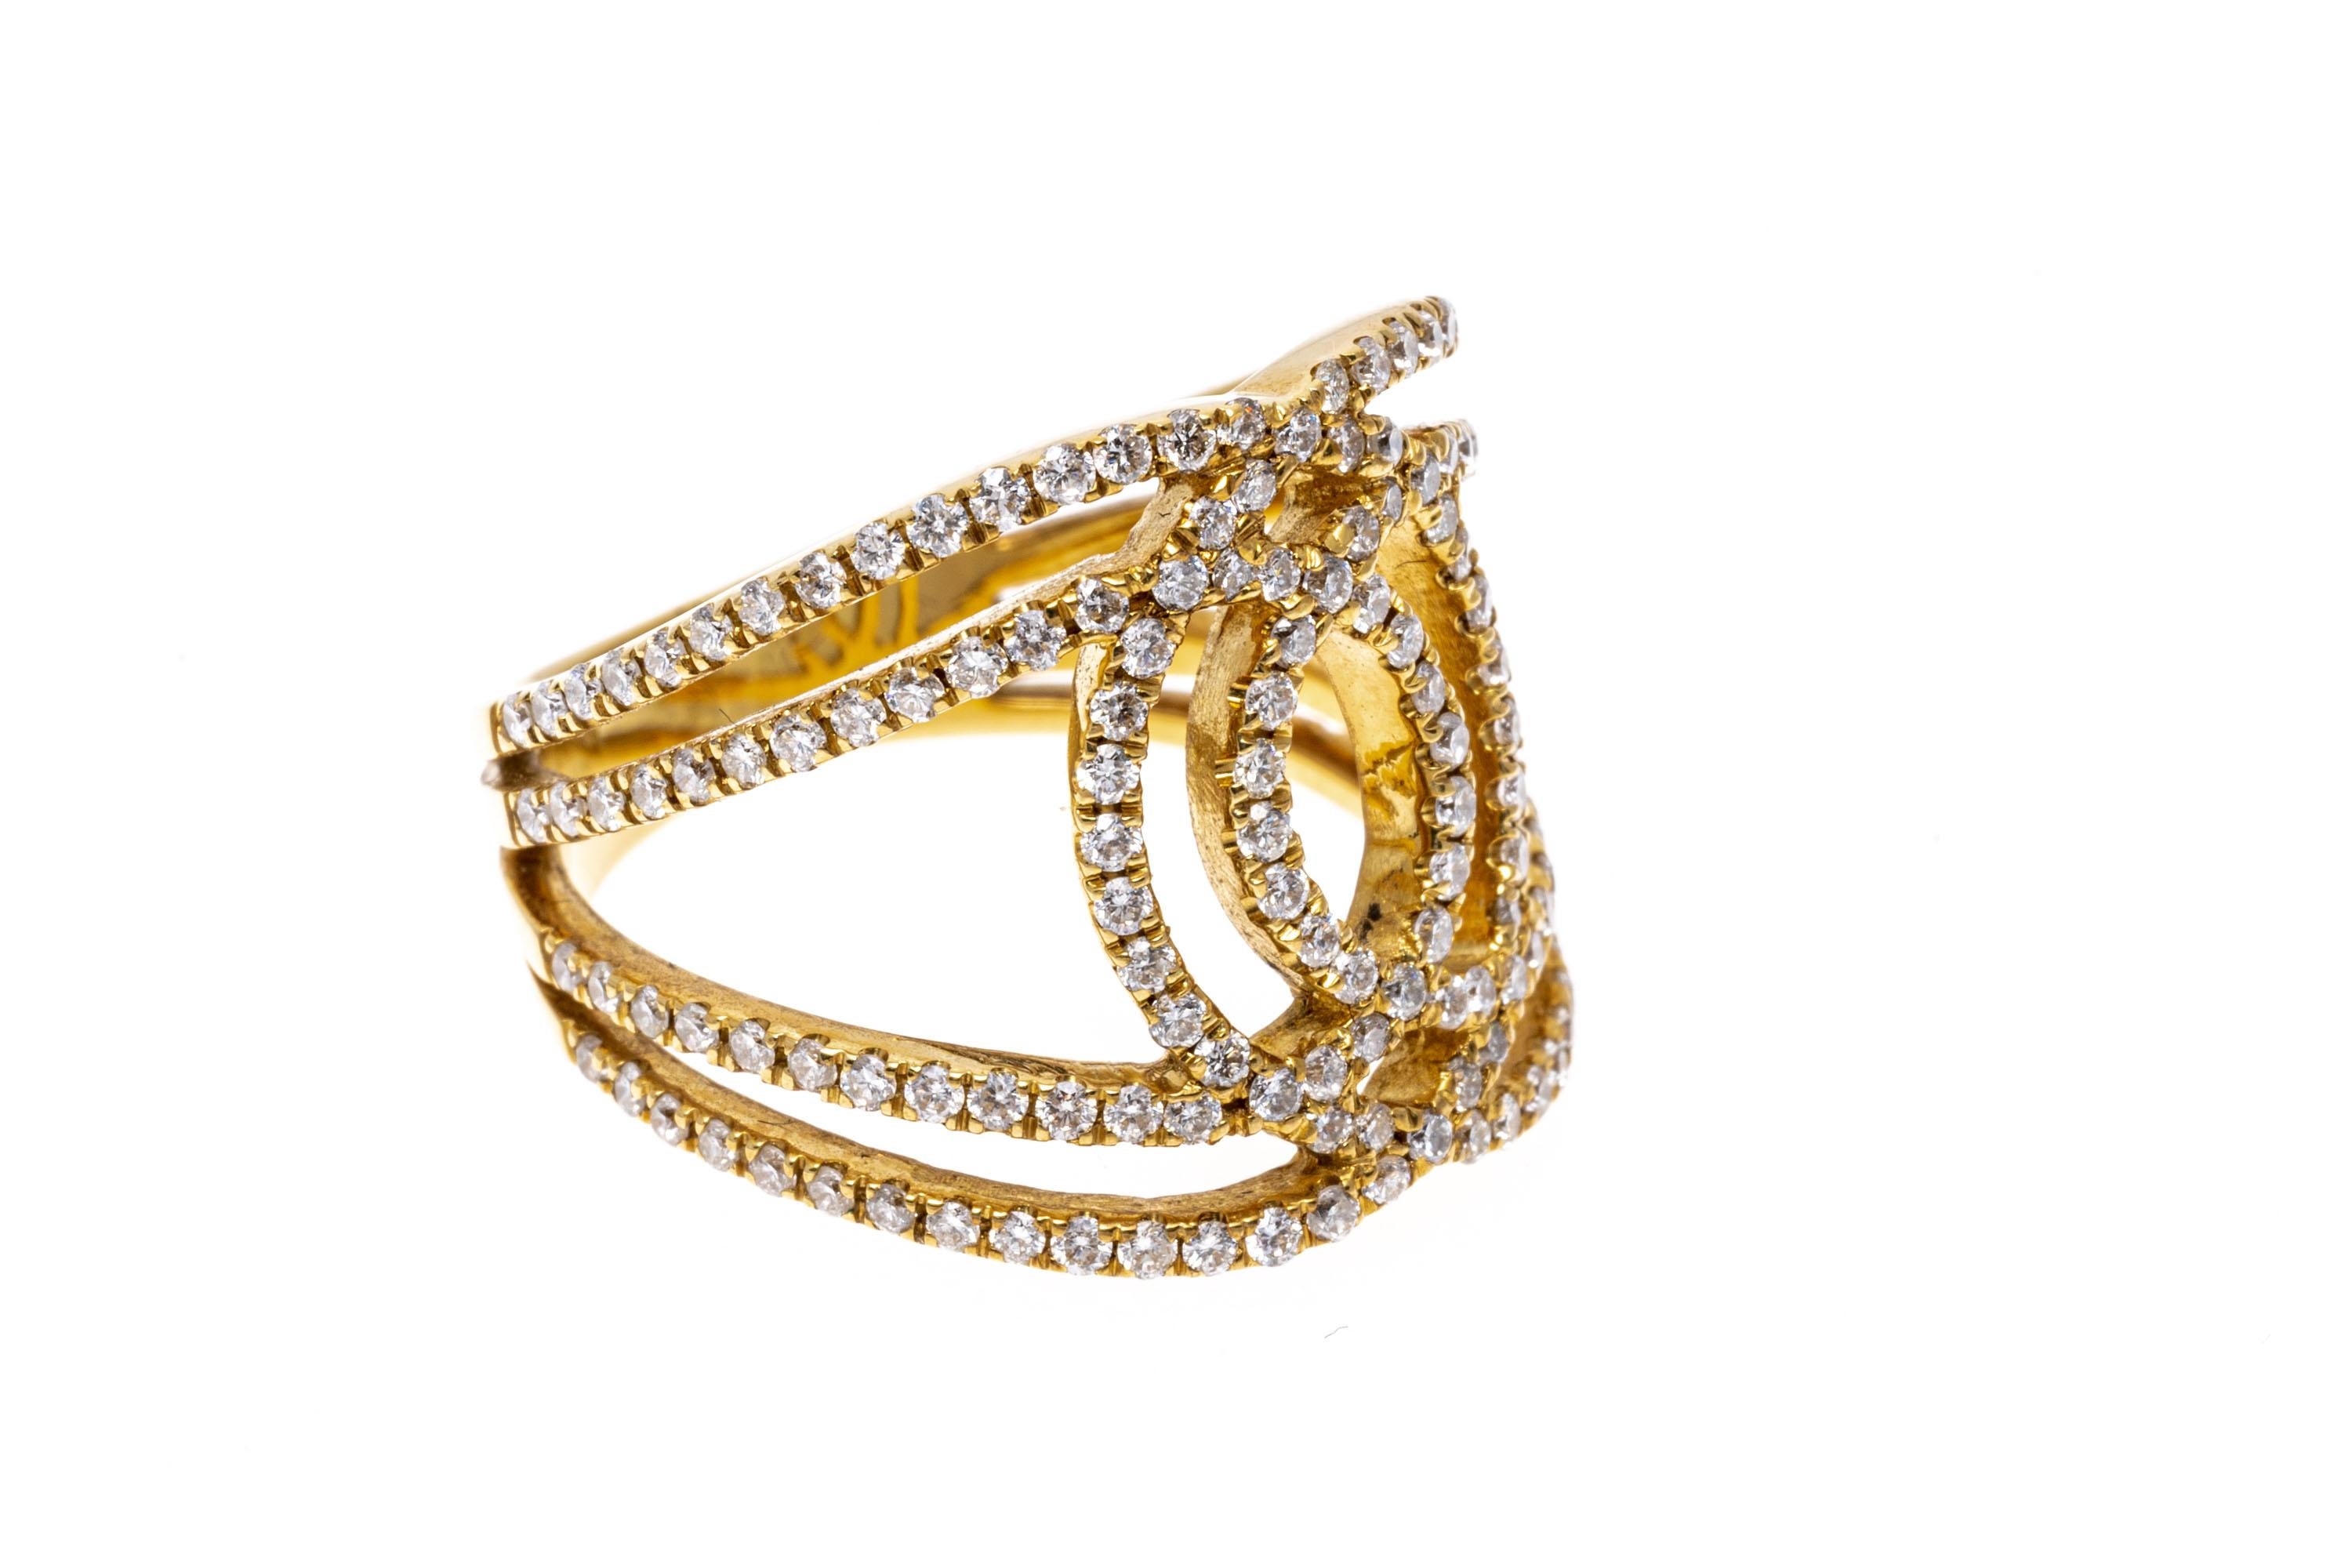 Ein superschicker Ring aus 18 Karat Gelbgold. Ineinander verwobene und sich überlagernde Diamantenspuren sorgen für ein auffälliges und brillantes Schauspiel. Die Diamanten haben einen Durchmesser von etwa 1.2 TCW. Ring Größe 7,5.
Markierungen: